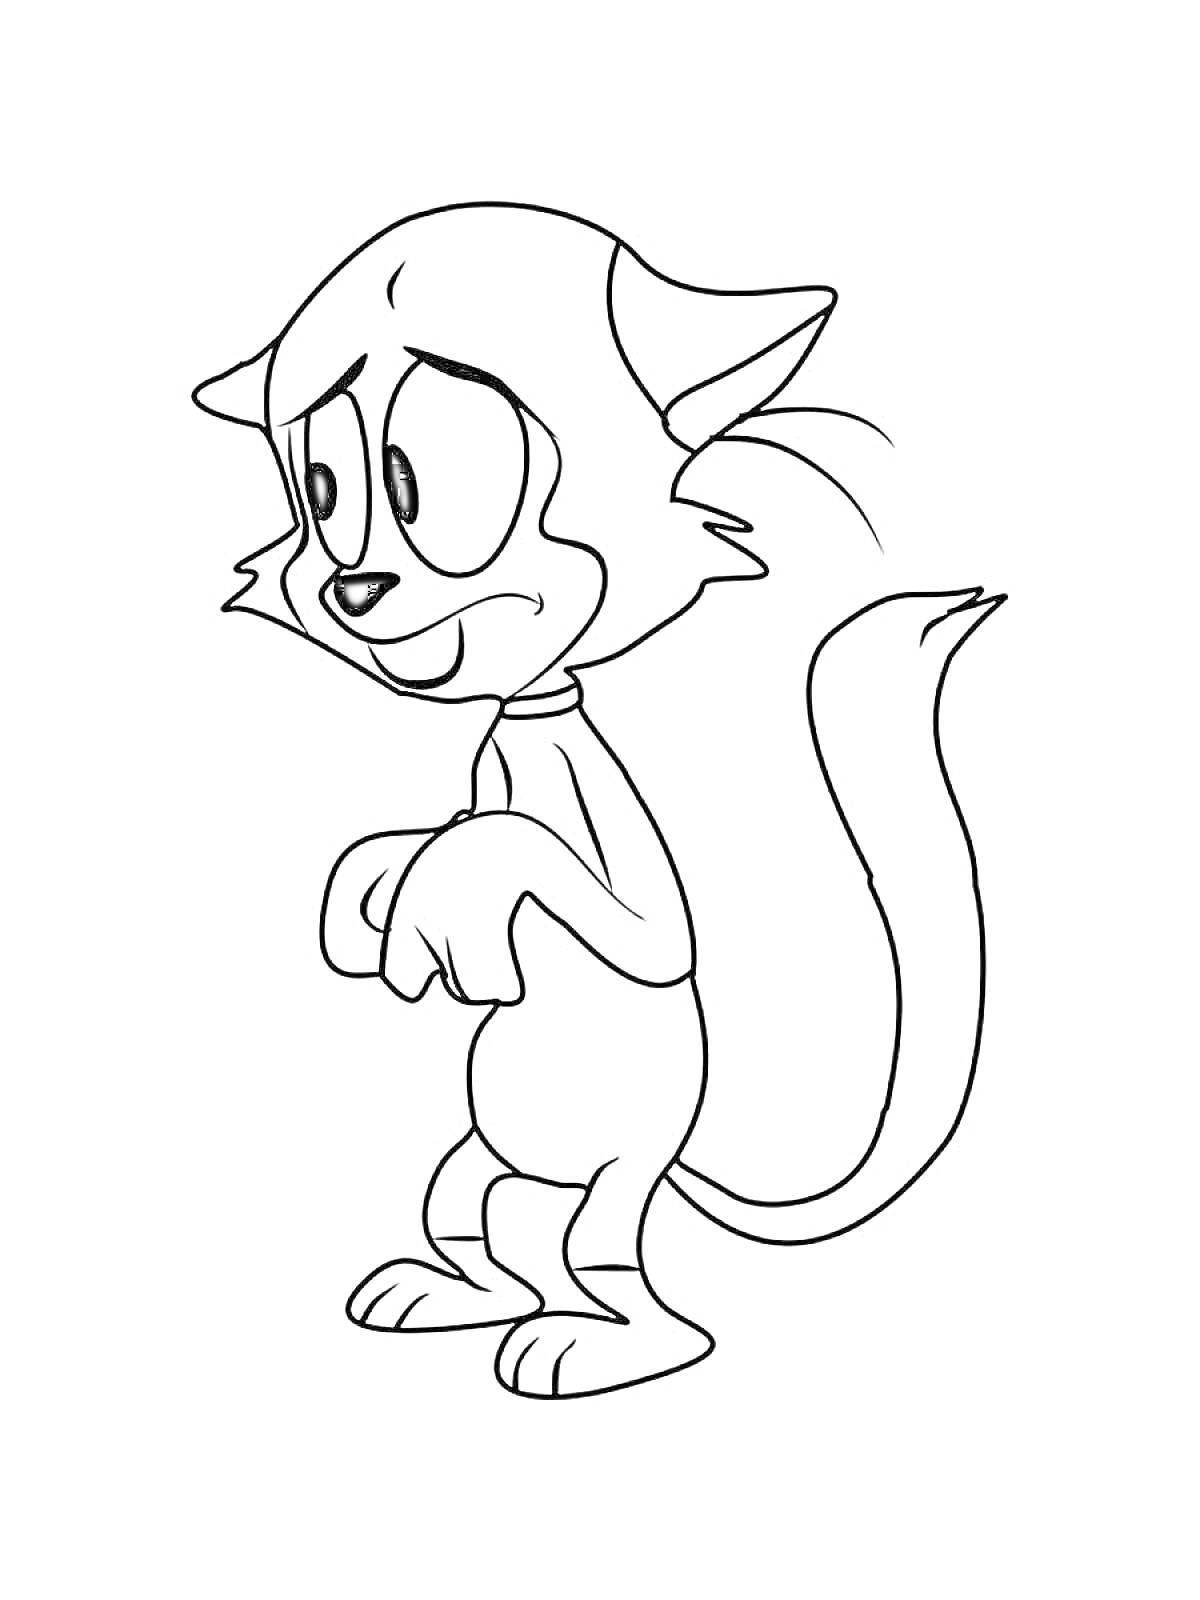 Раскраска Честер - стоящий кот с грустным выражением лица